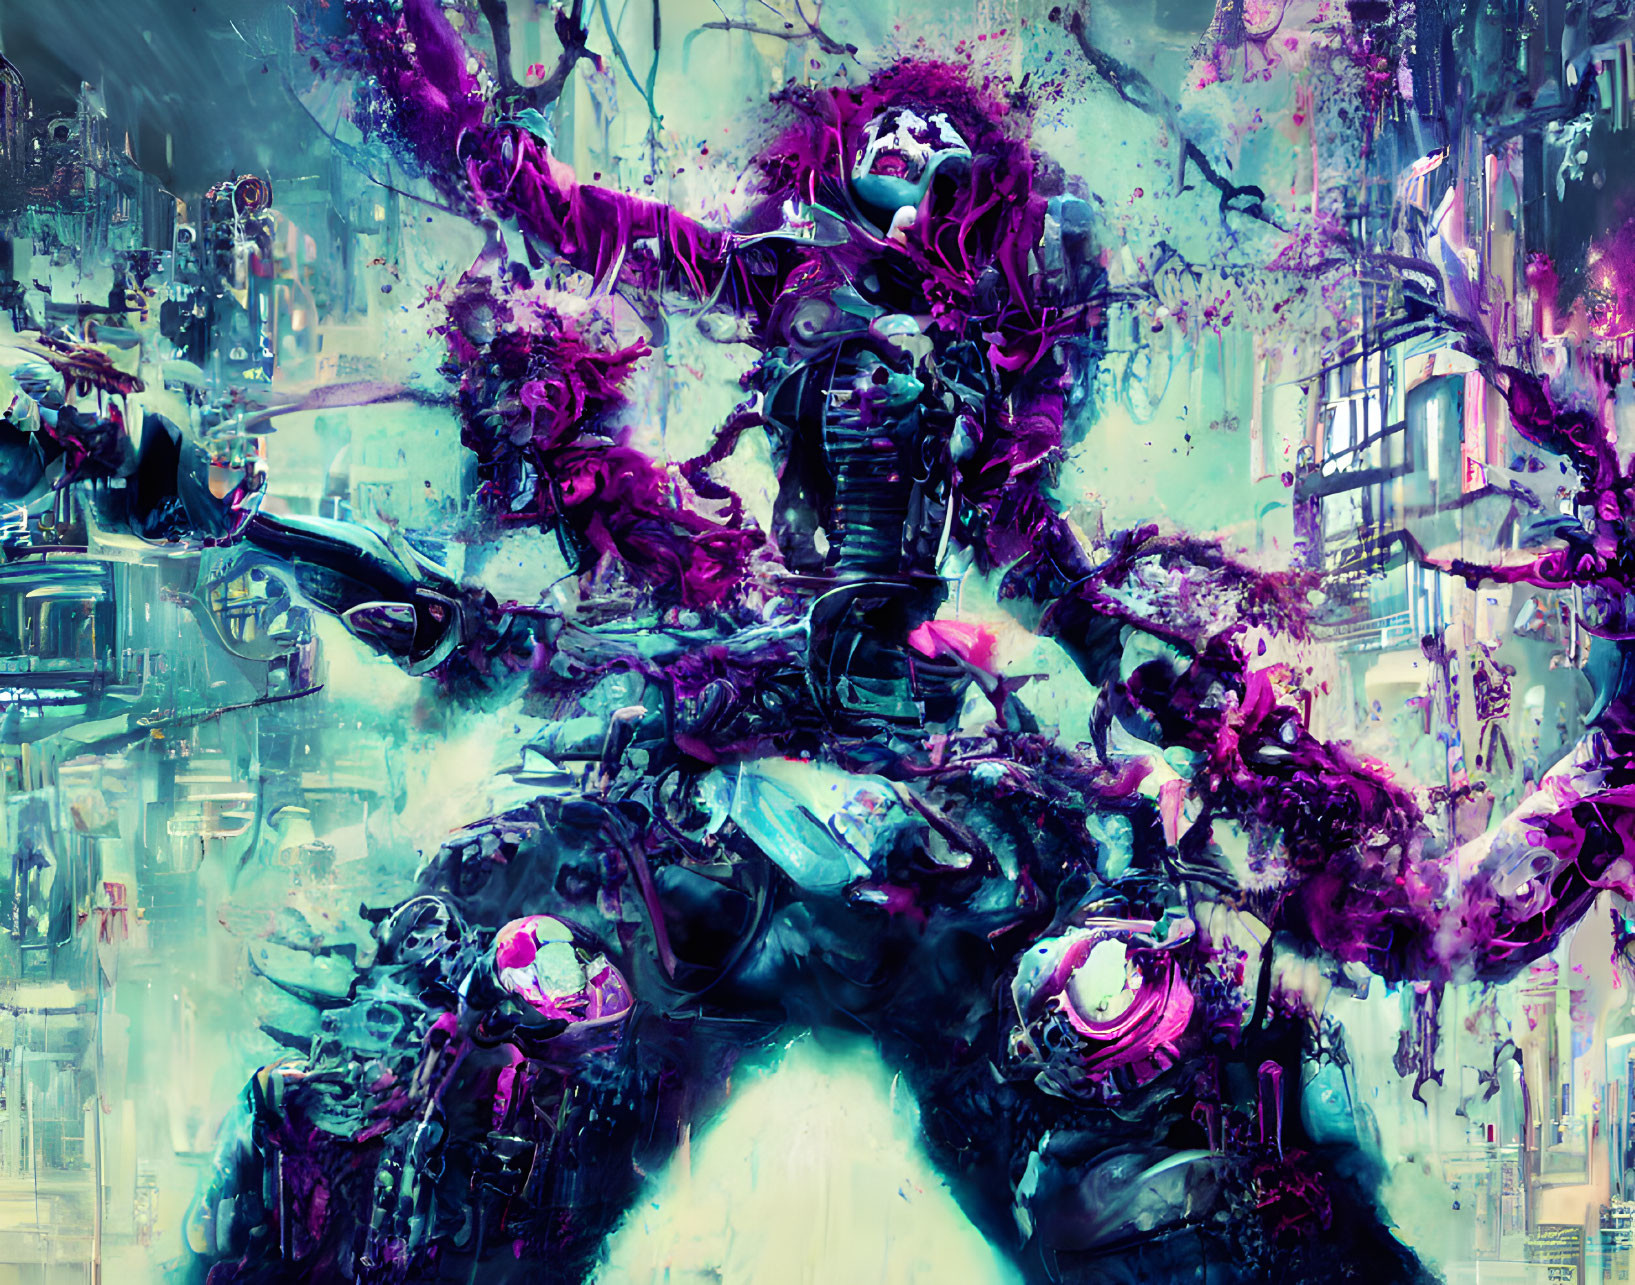 Futuristic cyberpunk artwork: Figure in neon armor in chaotic cityscape